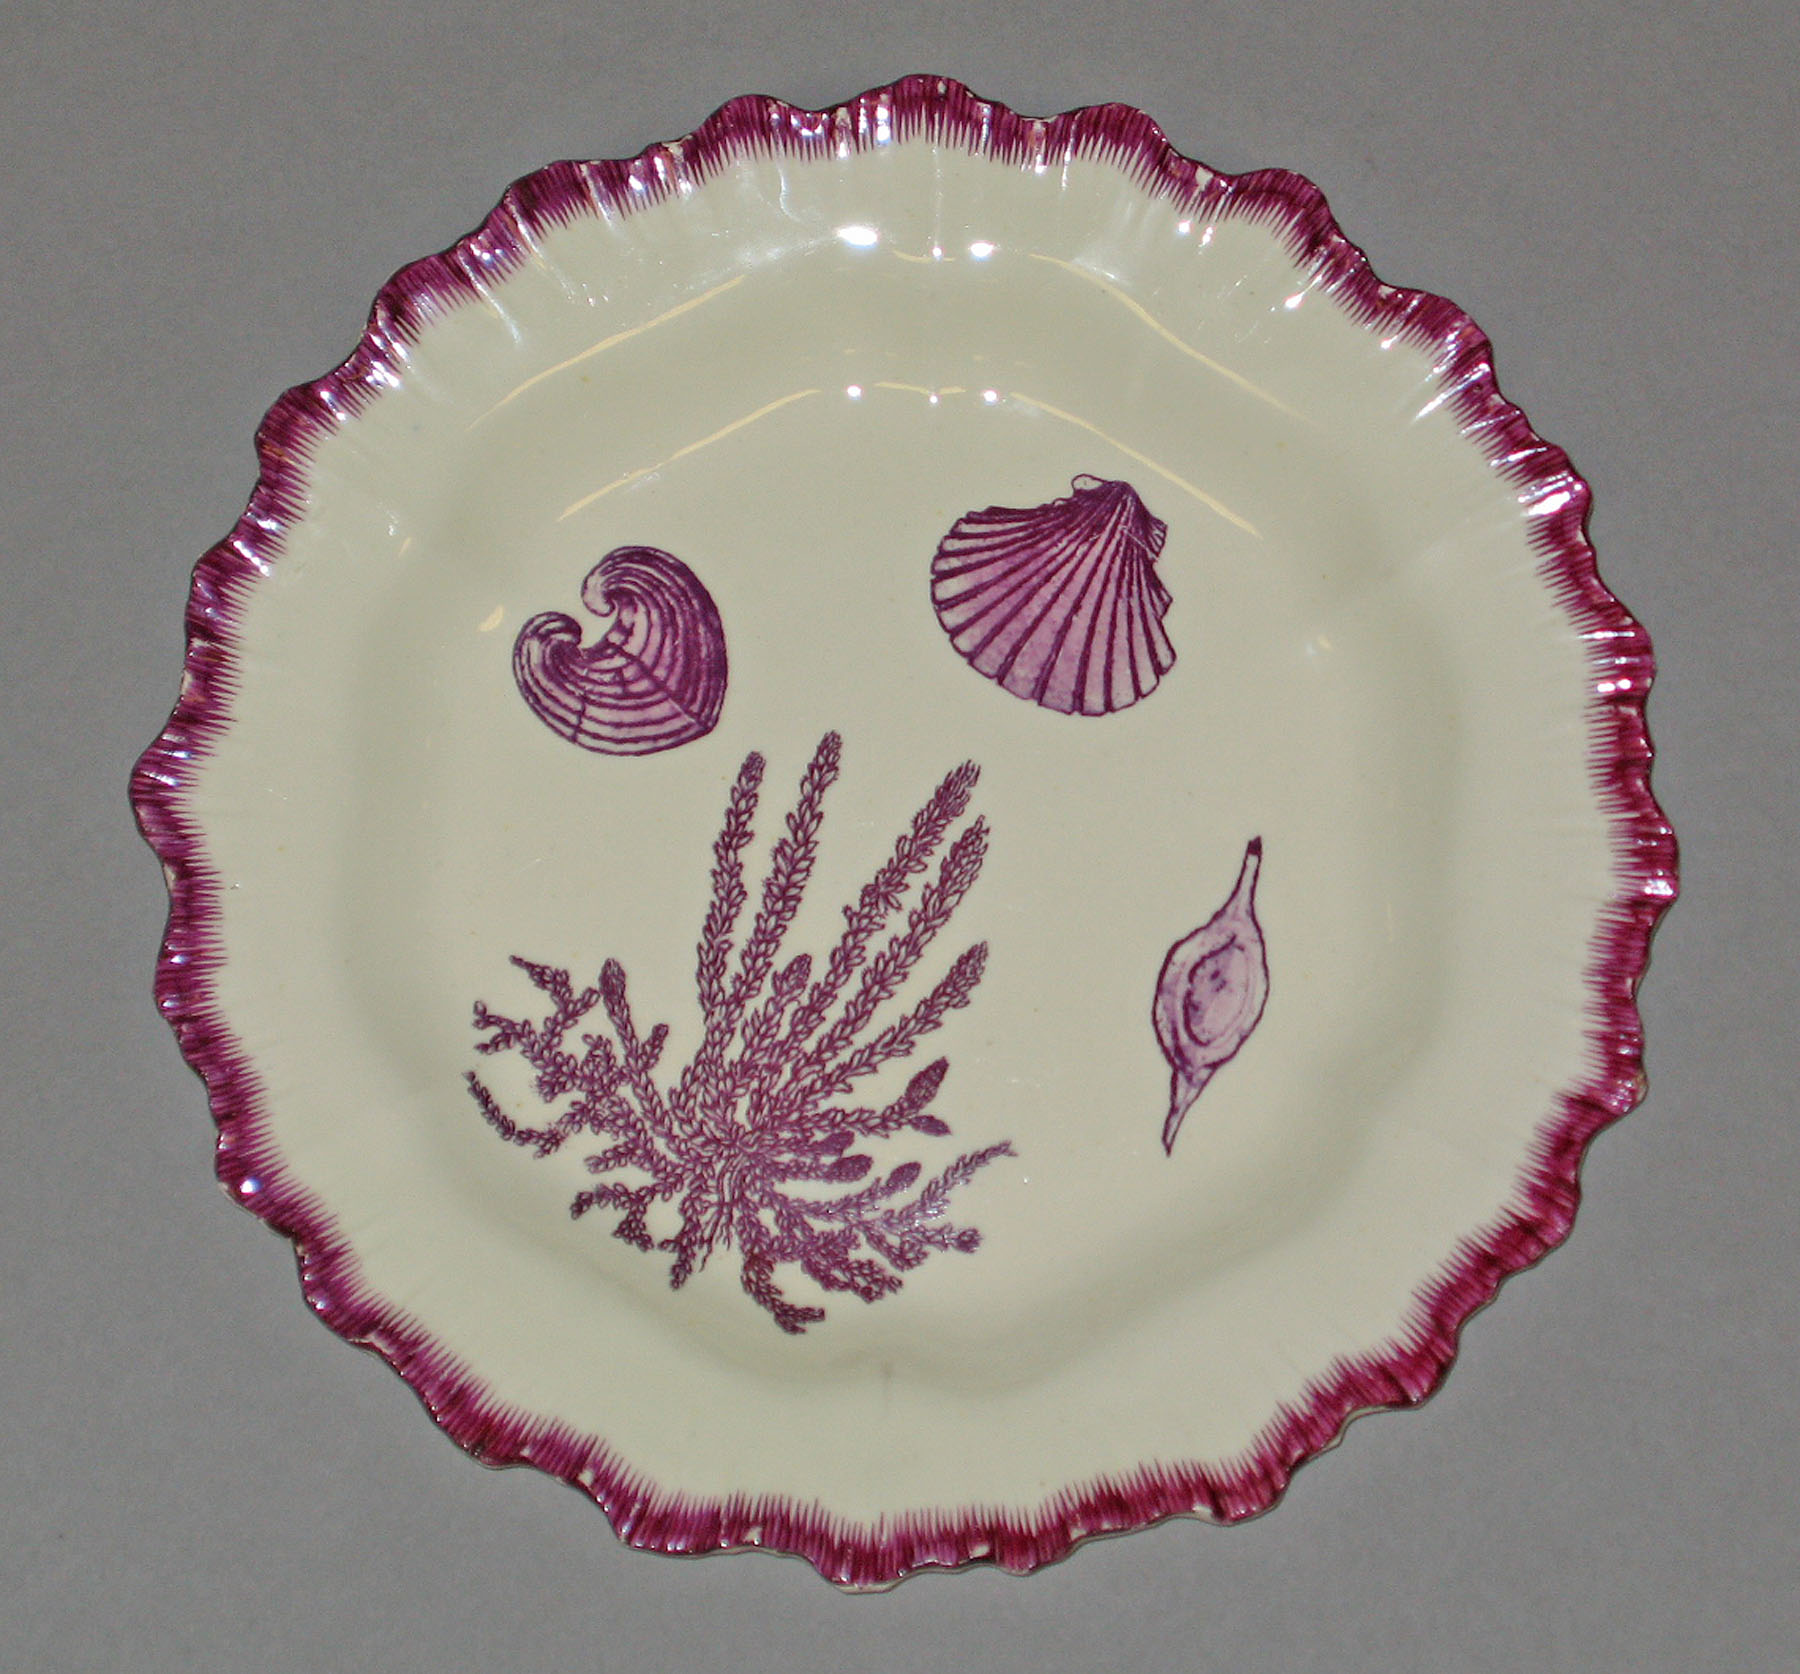 1964.0156.017 Creamware plate